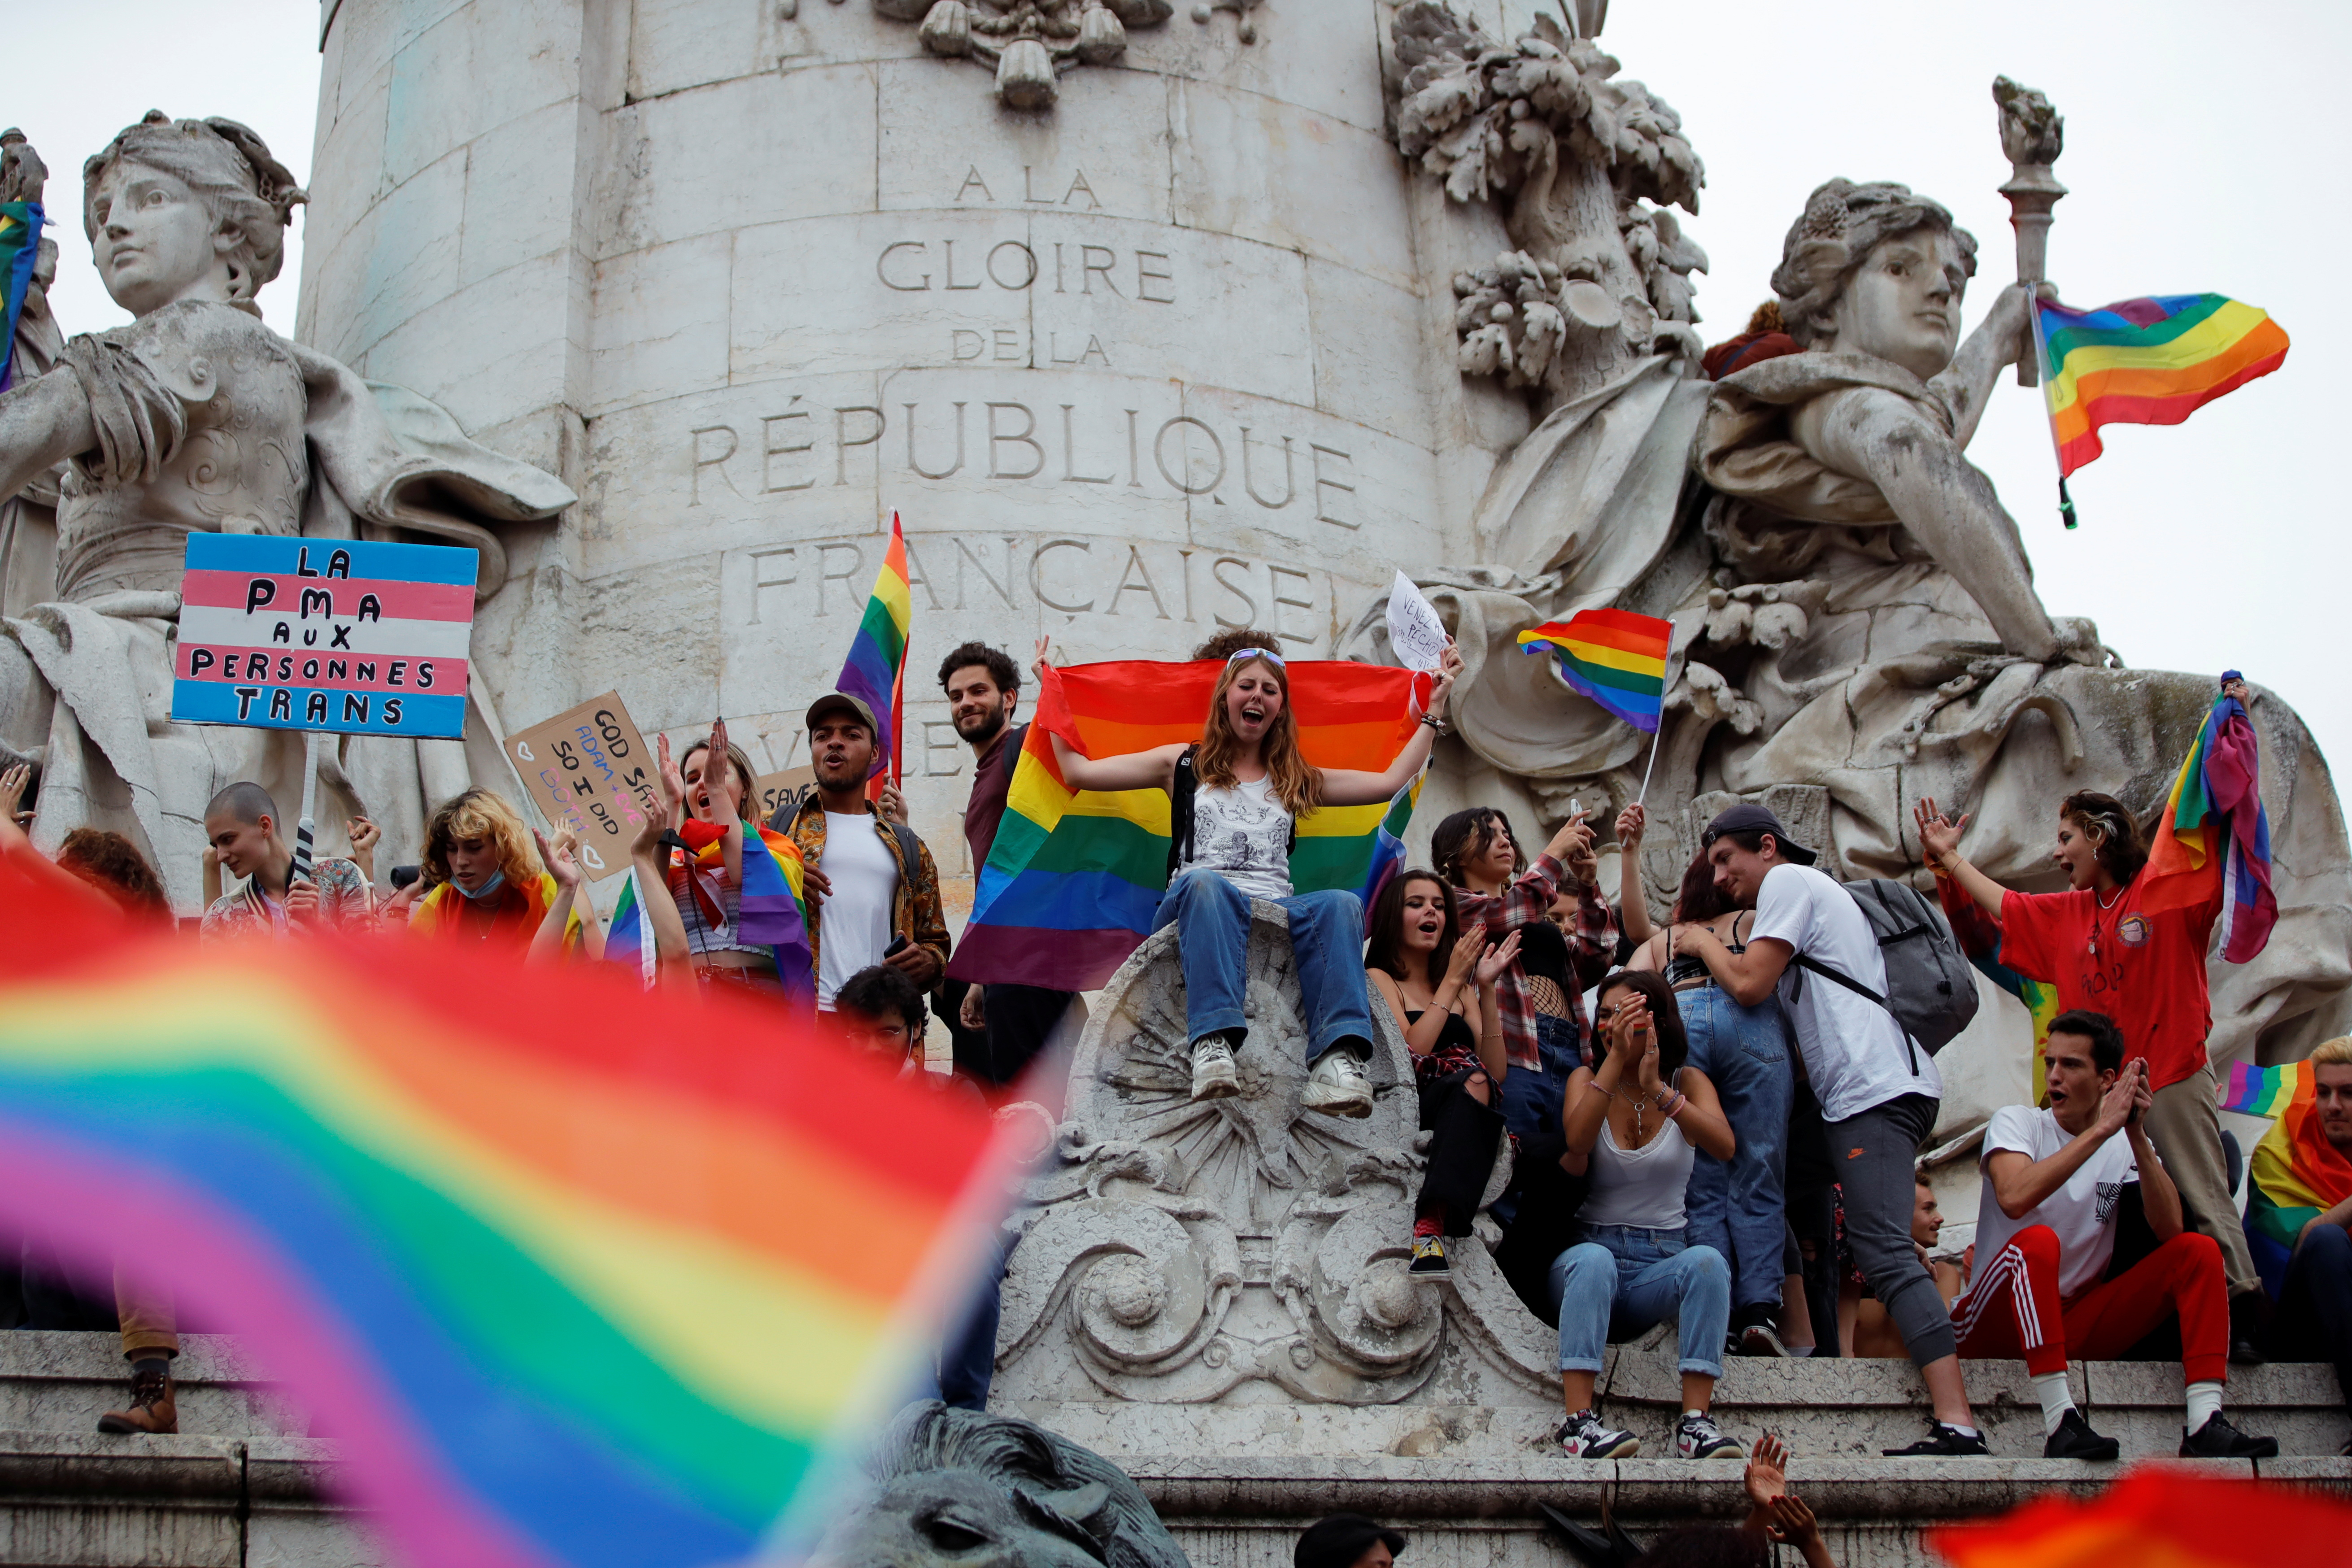 Teilnehmer mit Regenbogenfahnen und Plakaten sitzen während des traditionellen LGBTQ-Pride-Marsches inmitten des Ausbruchs der Coronavirus-Krankheit (COVID-19) auf dem Platz der Republik in Paris, Frankreich, 26. Juni 2021 auf einem Denkmal. REUTERS/Sarah Meyssonnier